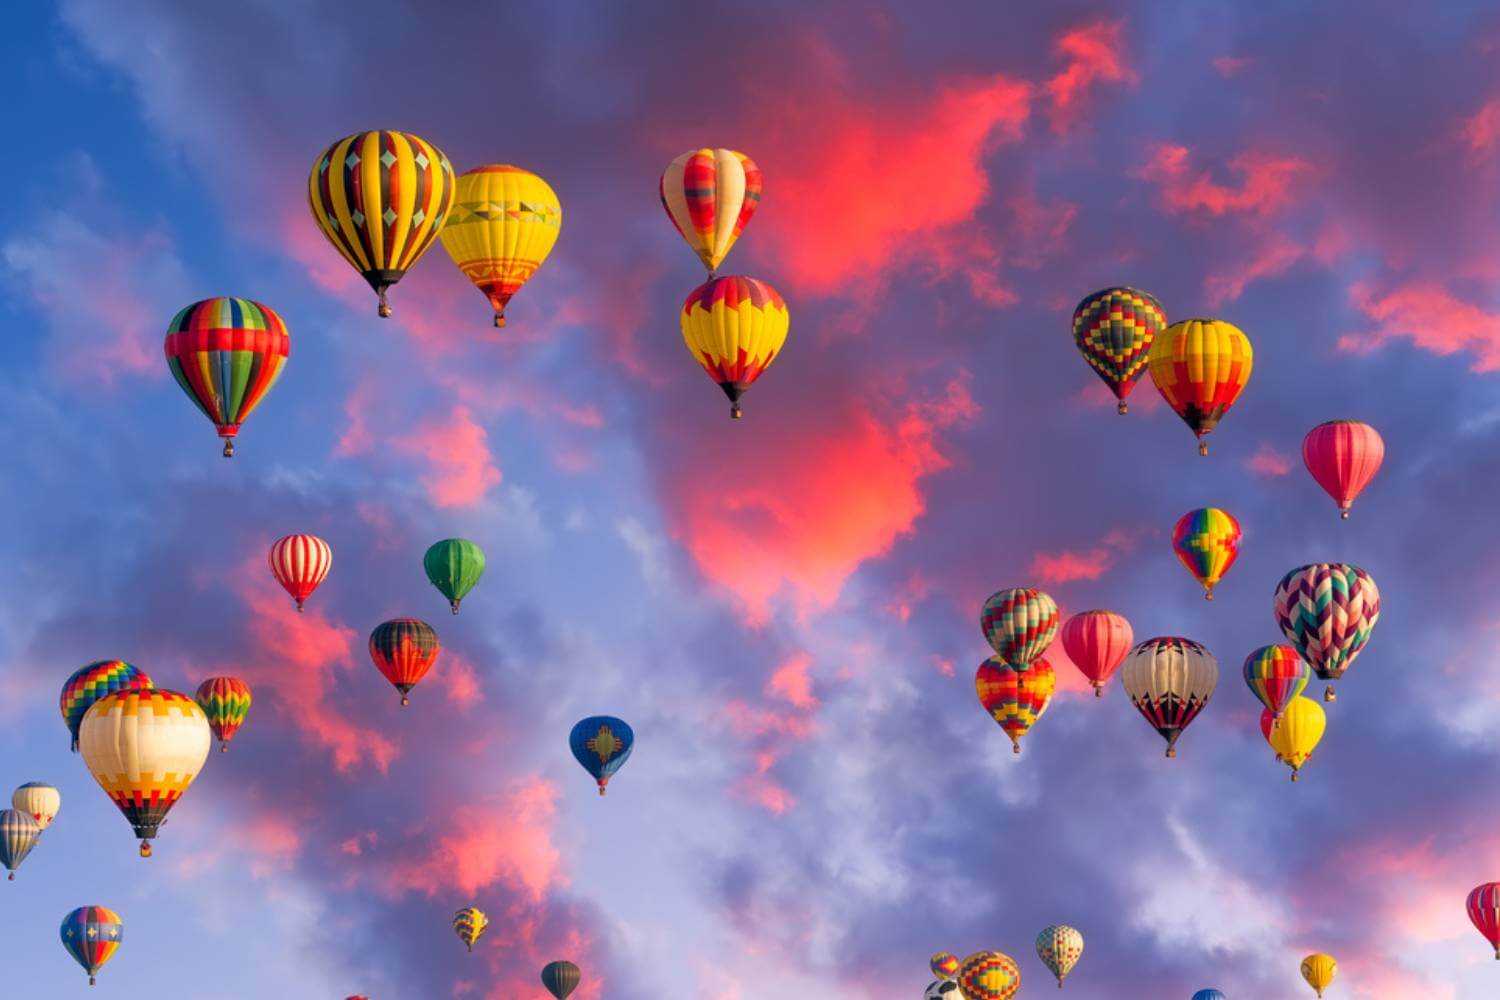 Albuquerque Hot Air Balloons at Dusk